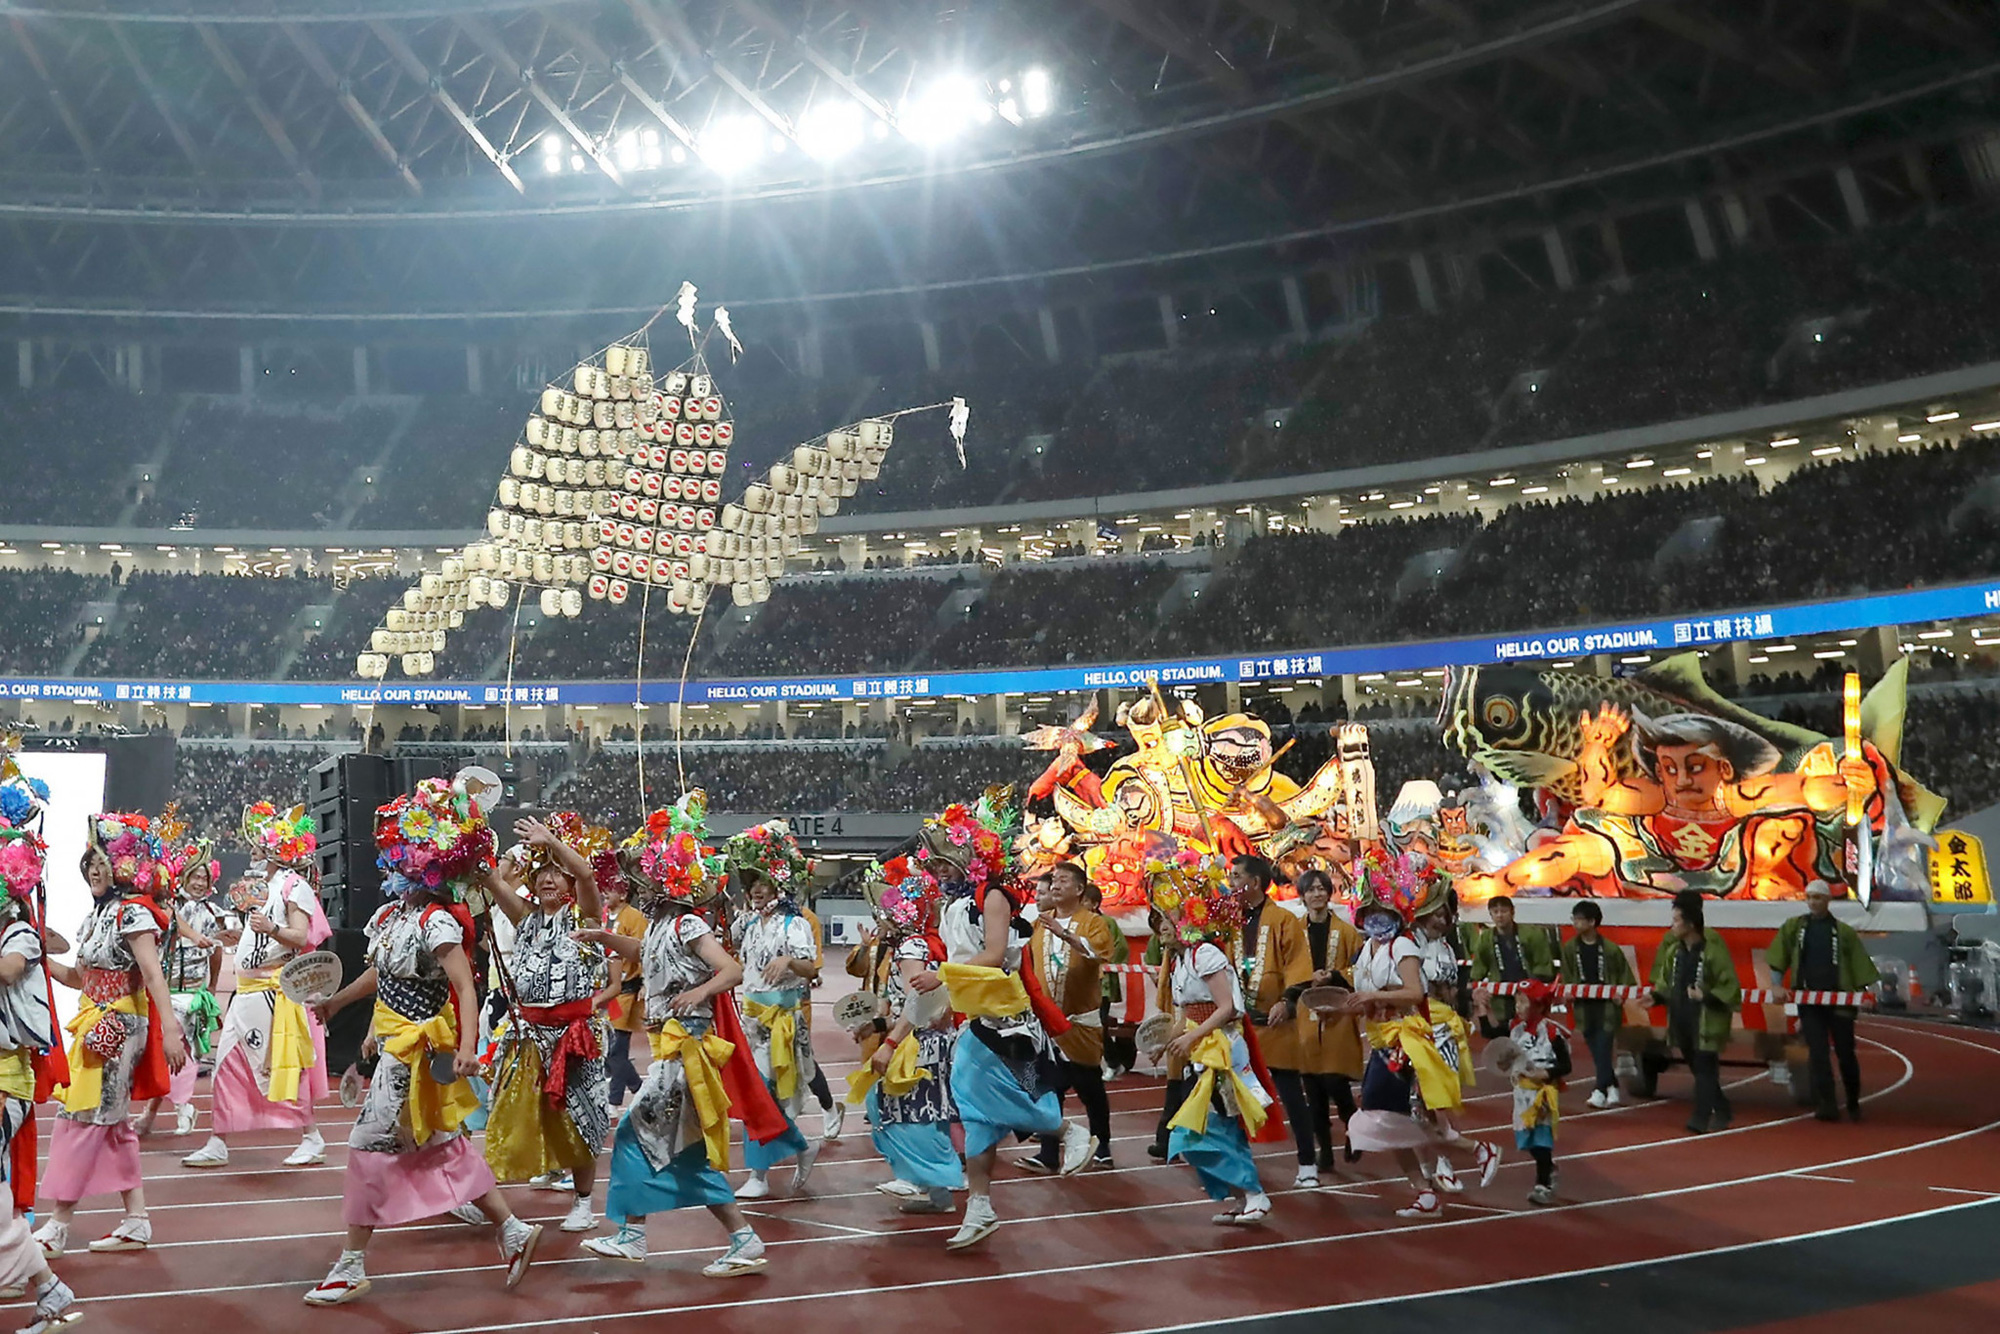 Toàn bộ thông tin cần biết về lễ khai mạc Olympic 2020 - Ảnh 2.